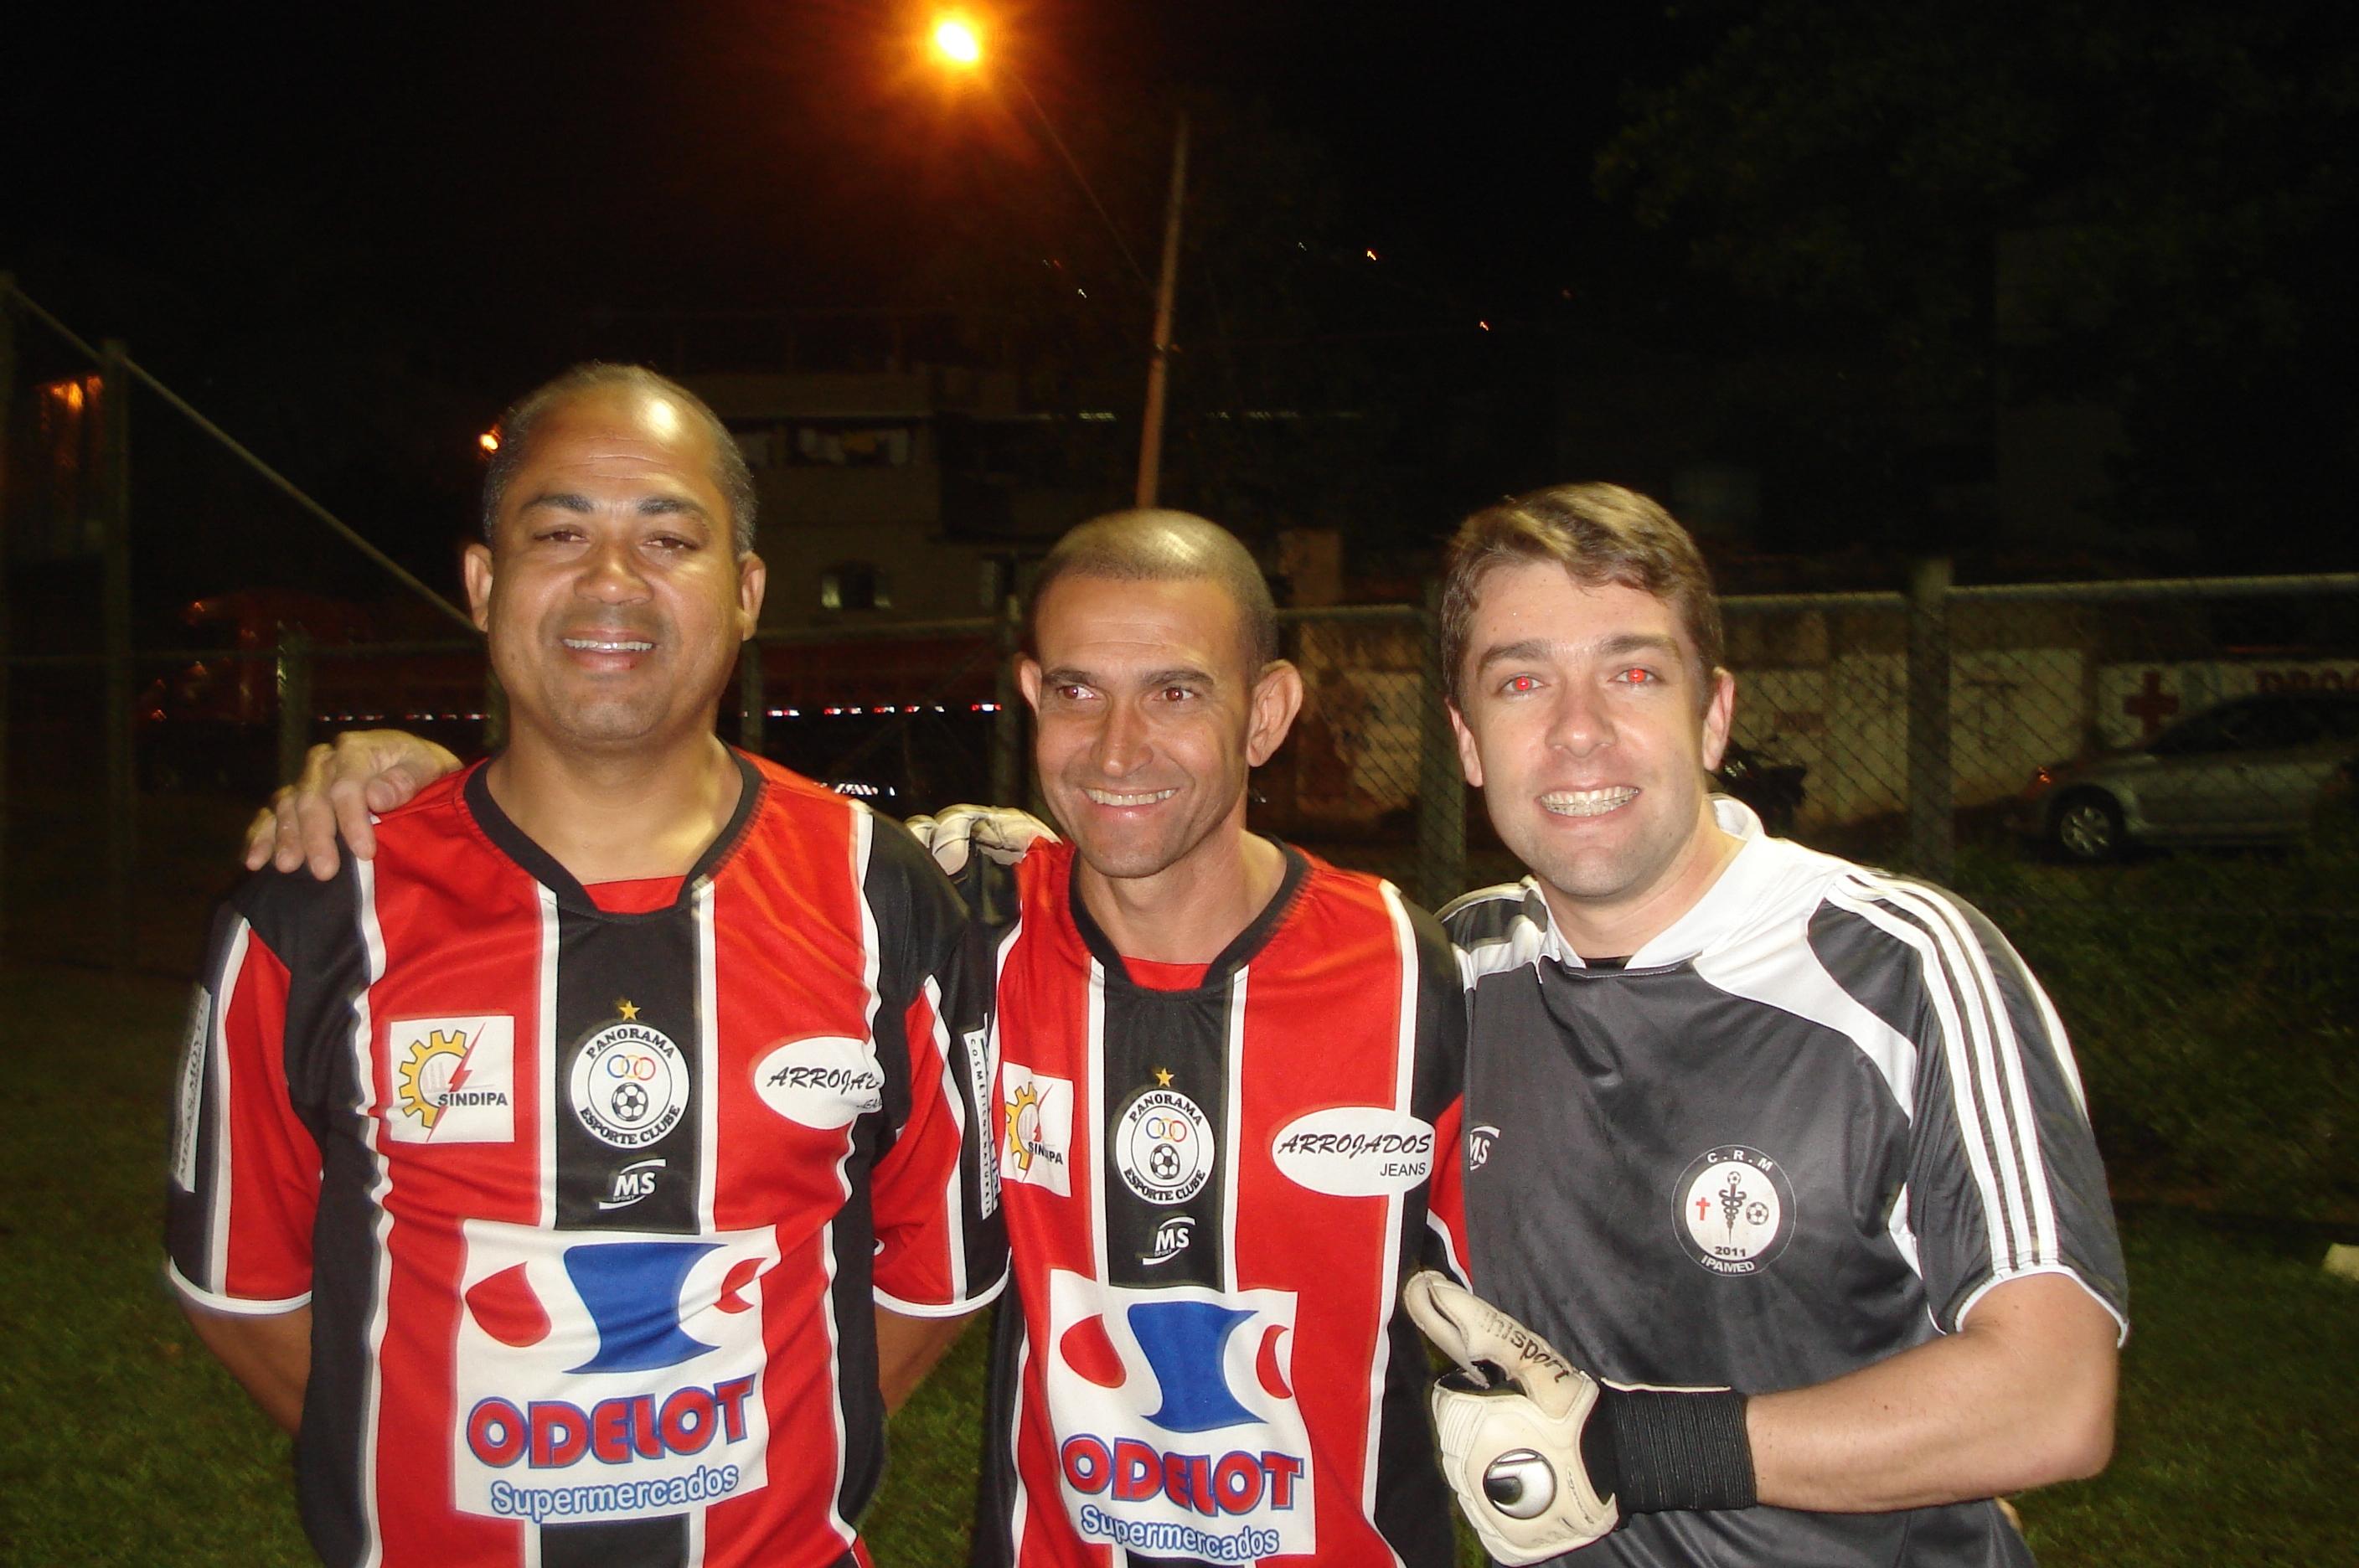 http://www.futebolamadordeminas.com/panorama16122014.jpg